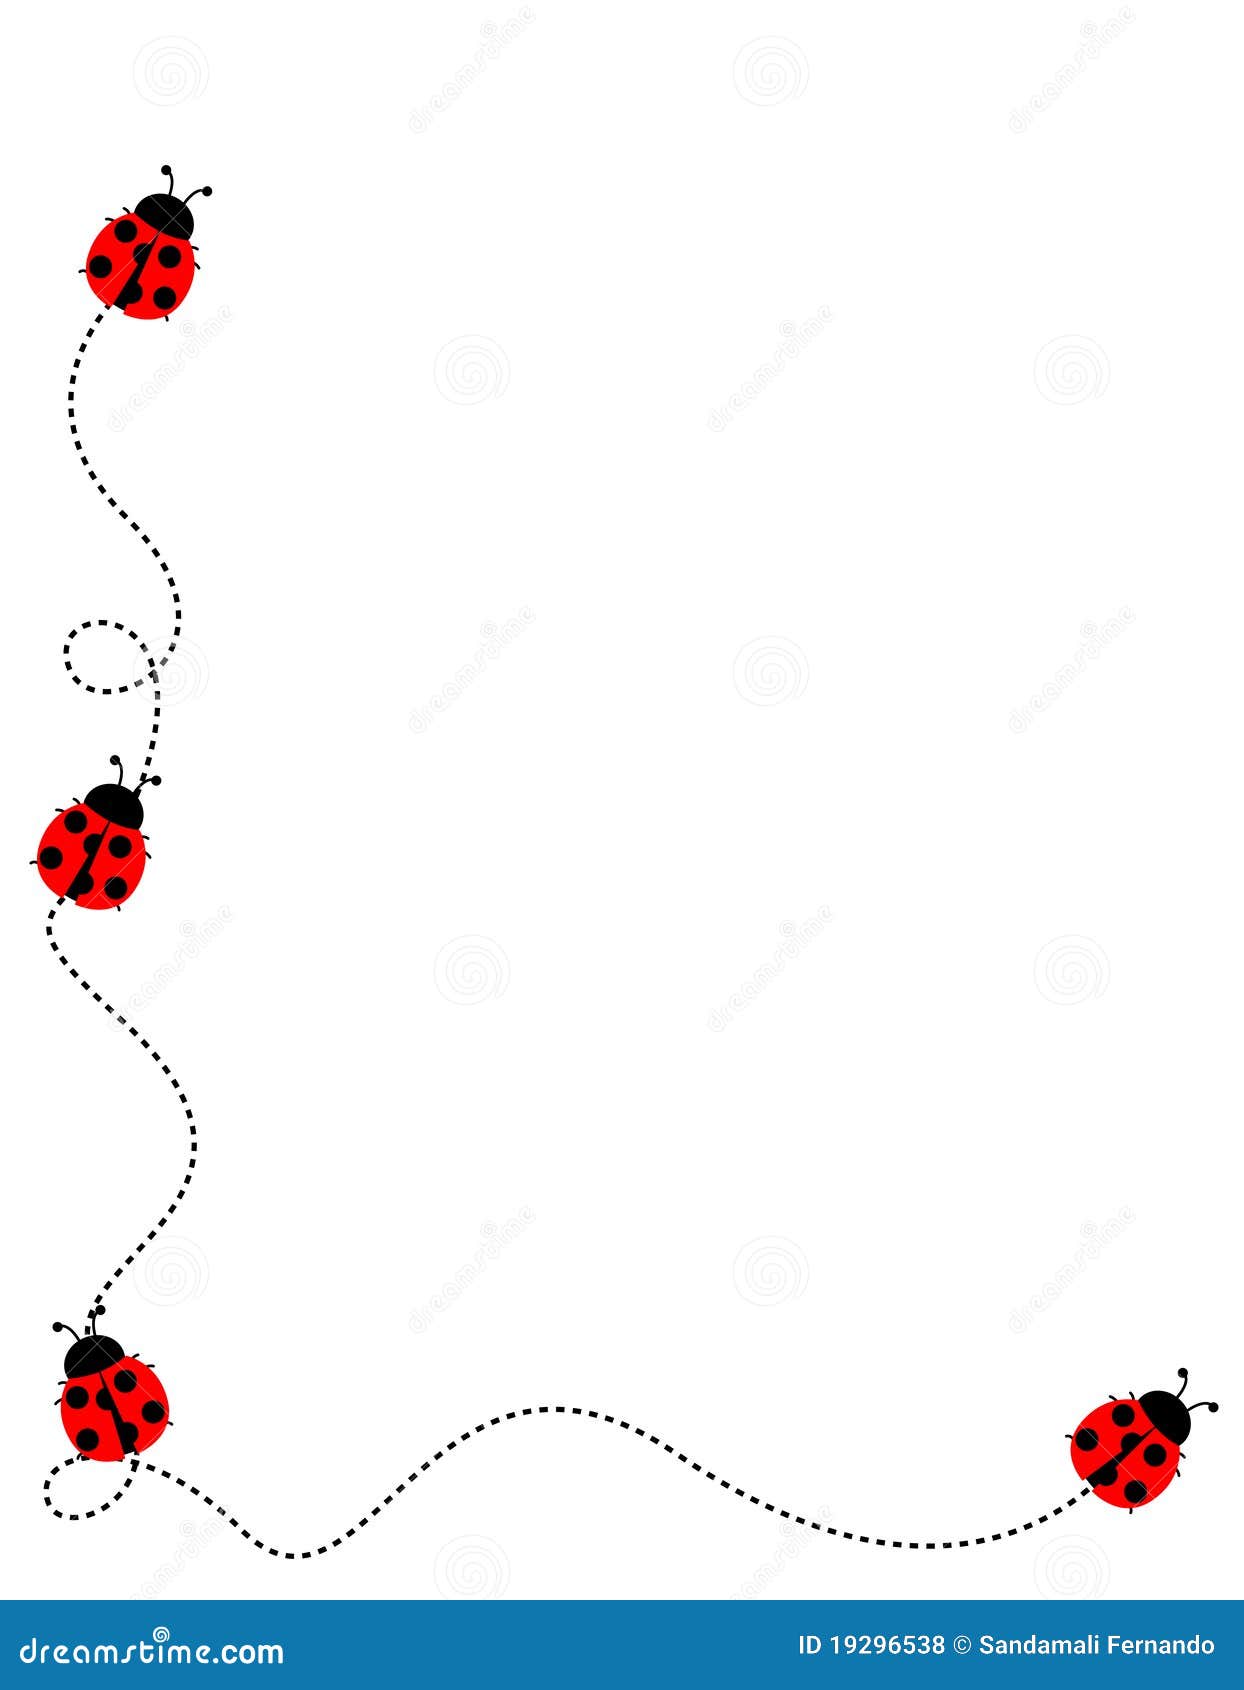 ladybug border clip art - photo #2